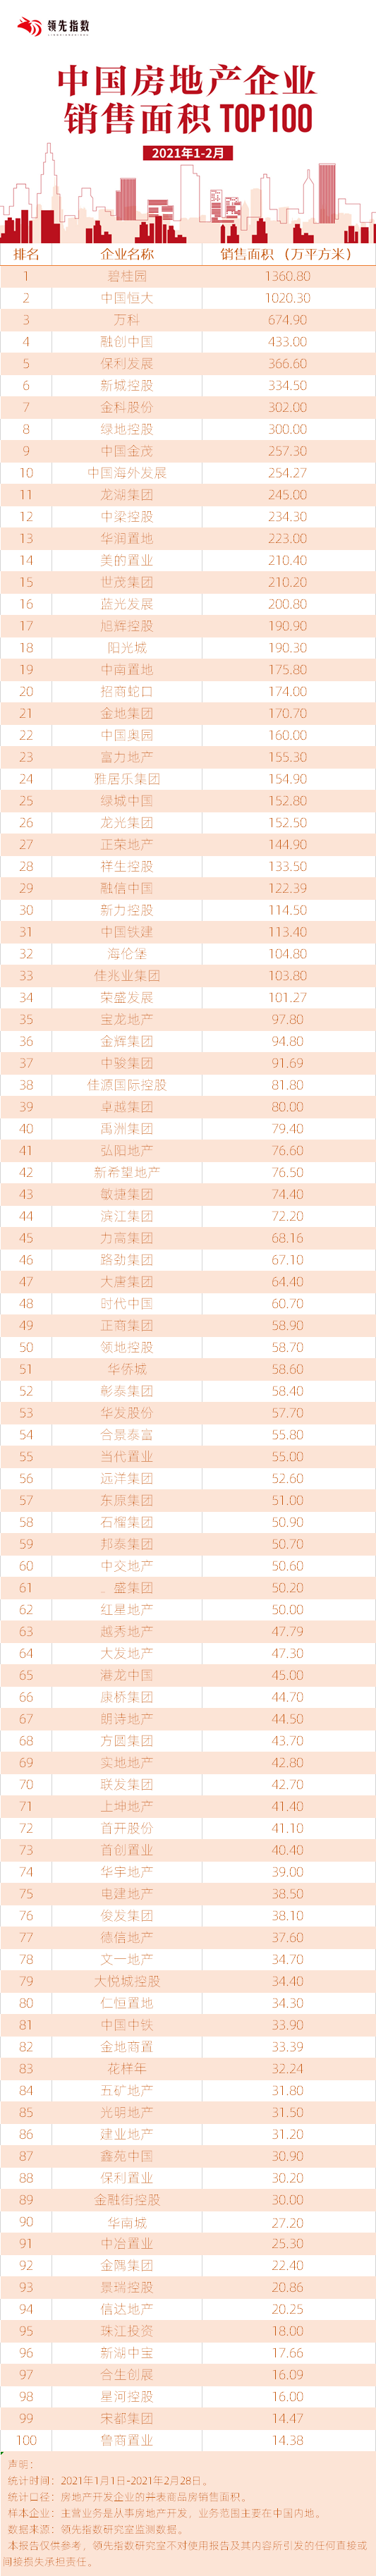 2021年1-2月中国房地产企业销售面积TOP100